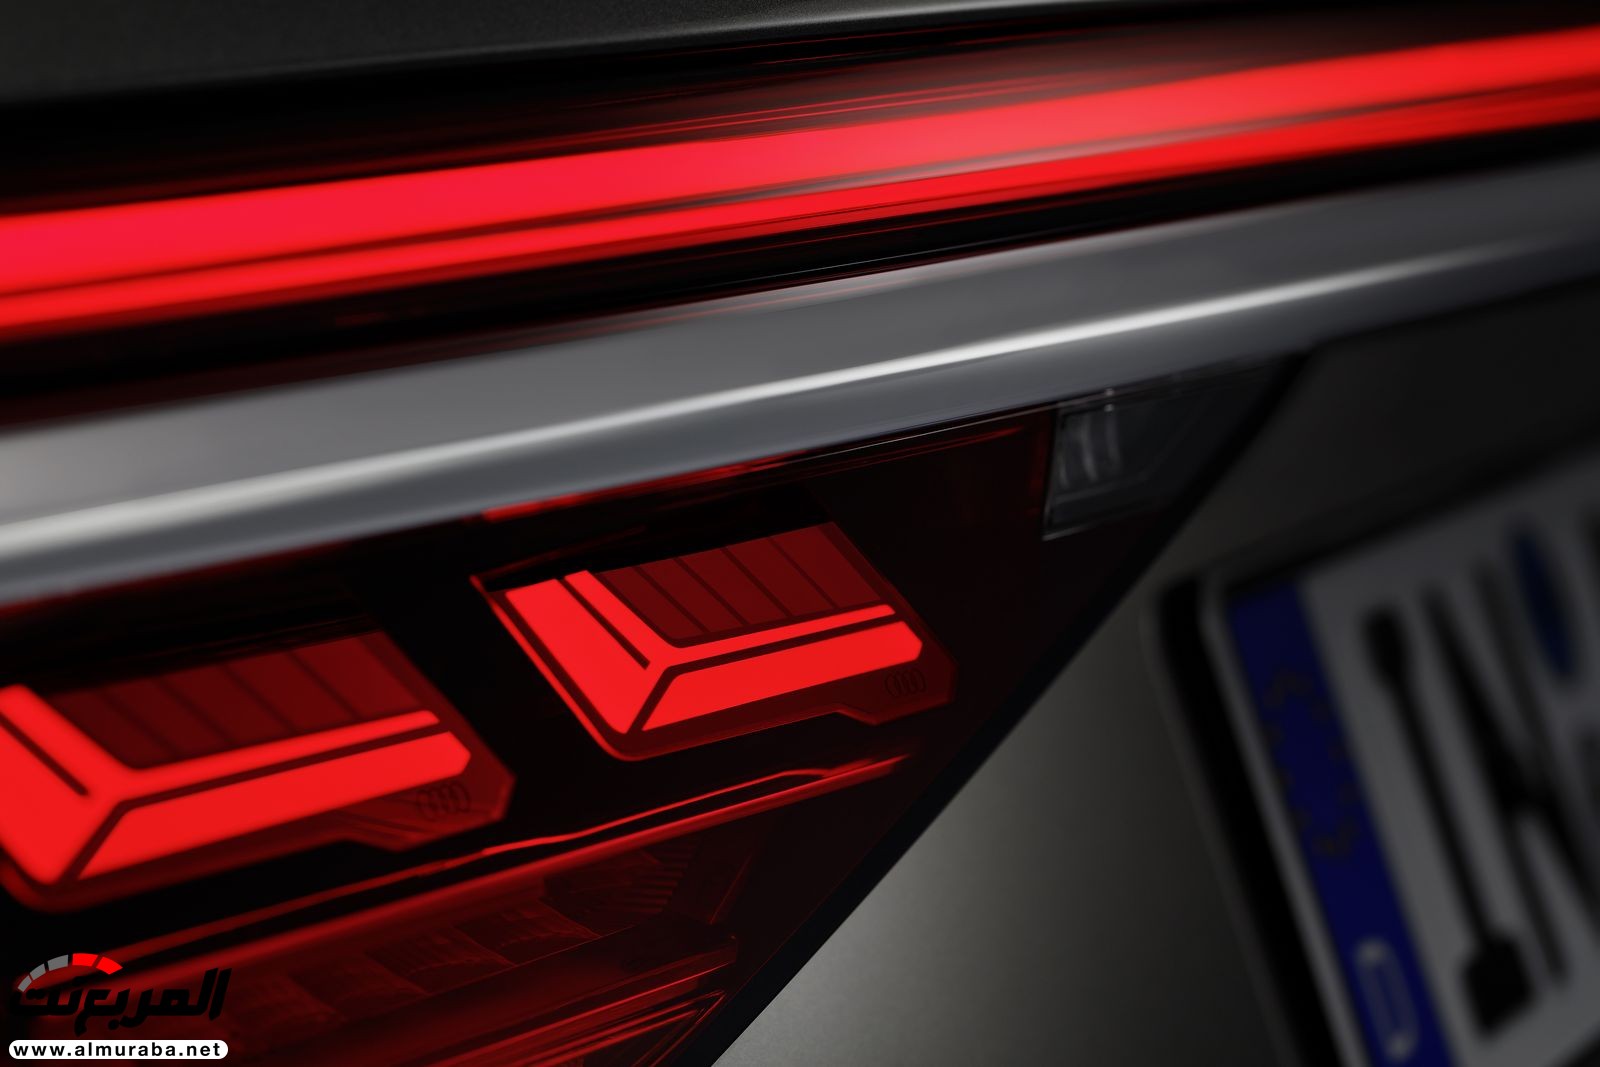 أودي A8 2018 الجديدة كلياً تكشف نفسها بتصميم وتقنيات متطورة "معلومات + 100 صورة" Audi A8 36